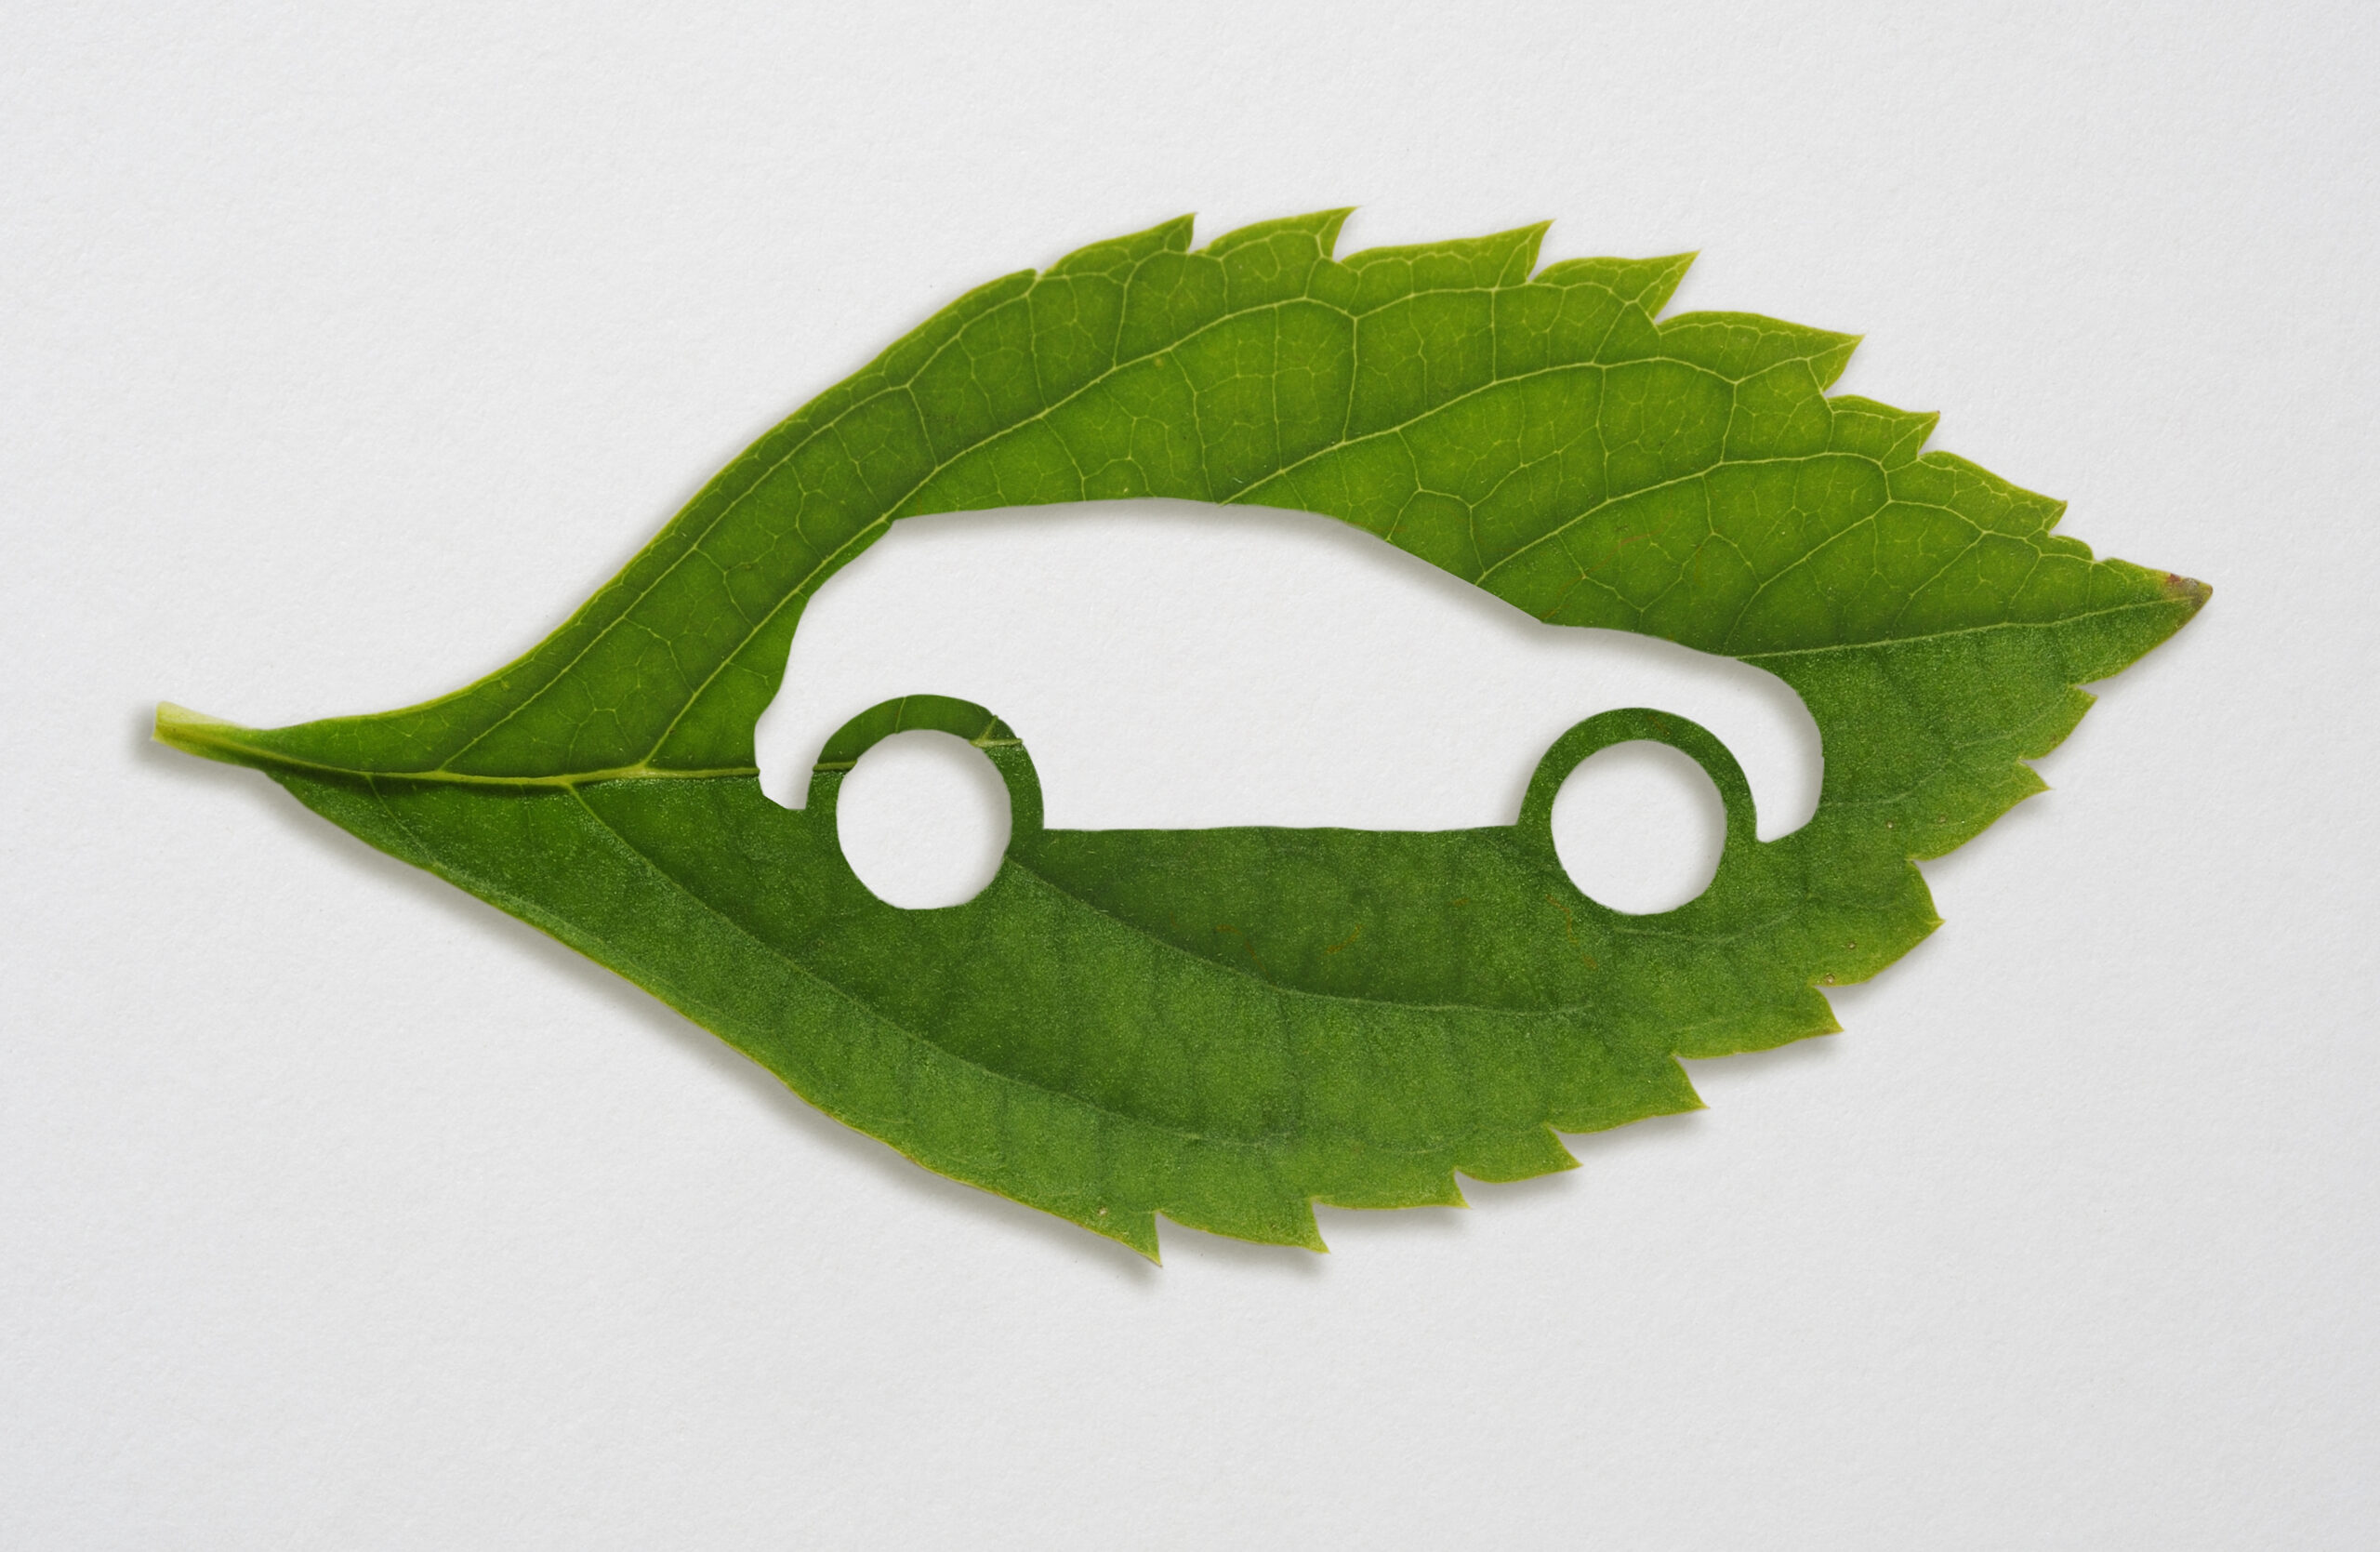 green leaf with a cut out car symbol